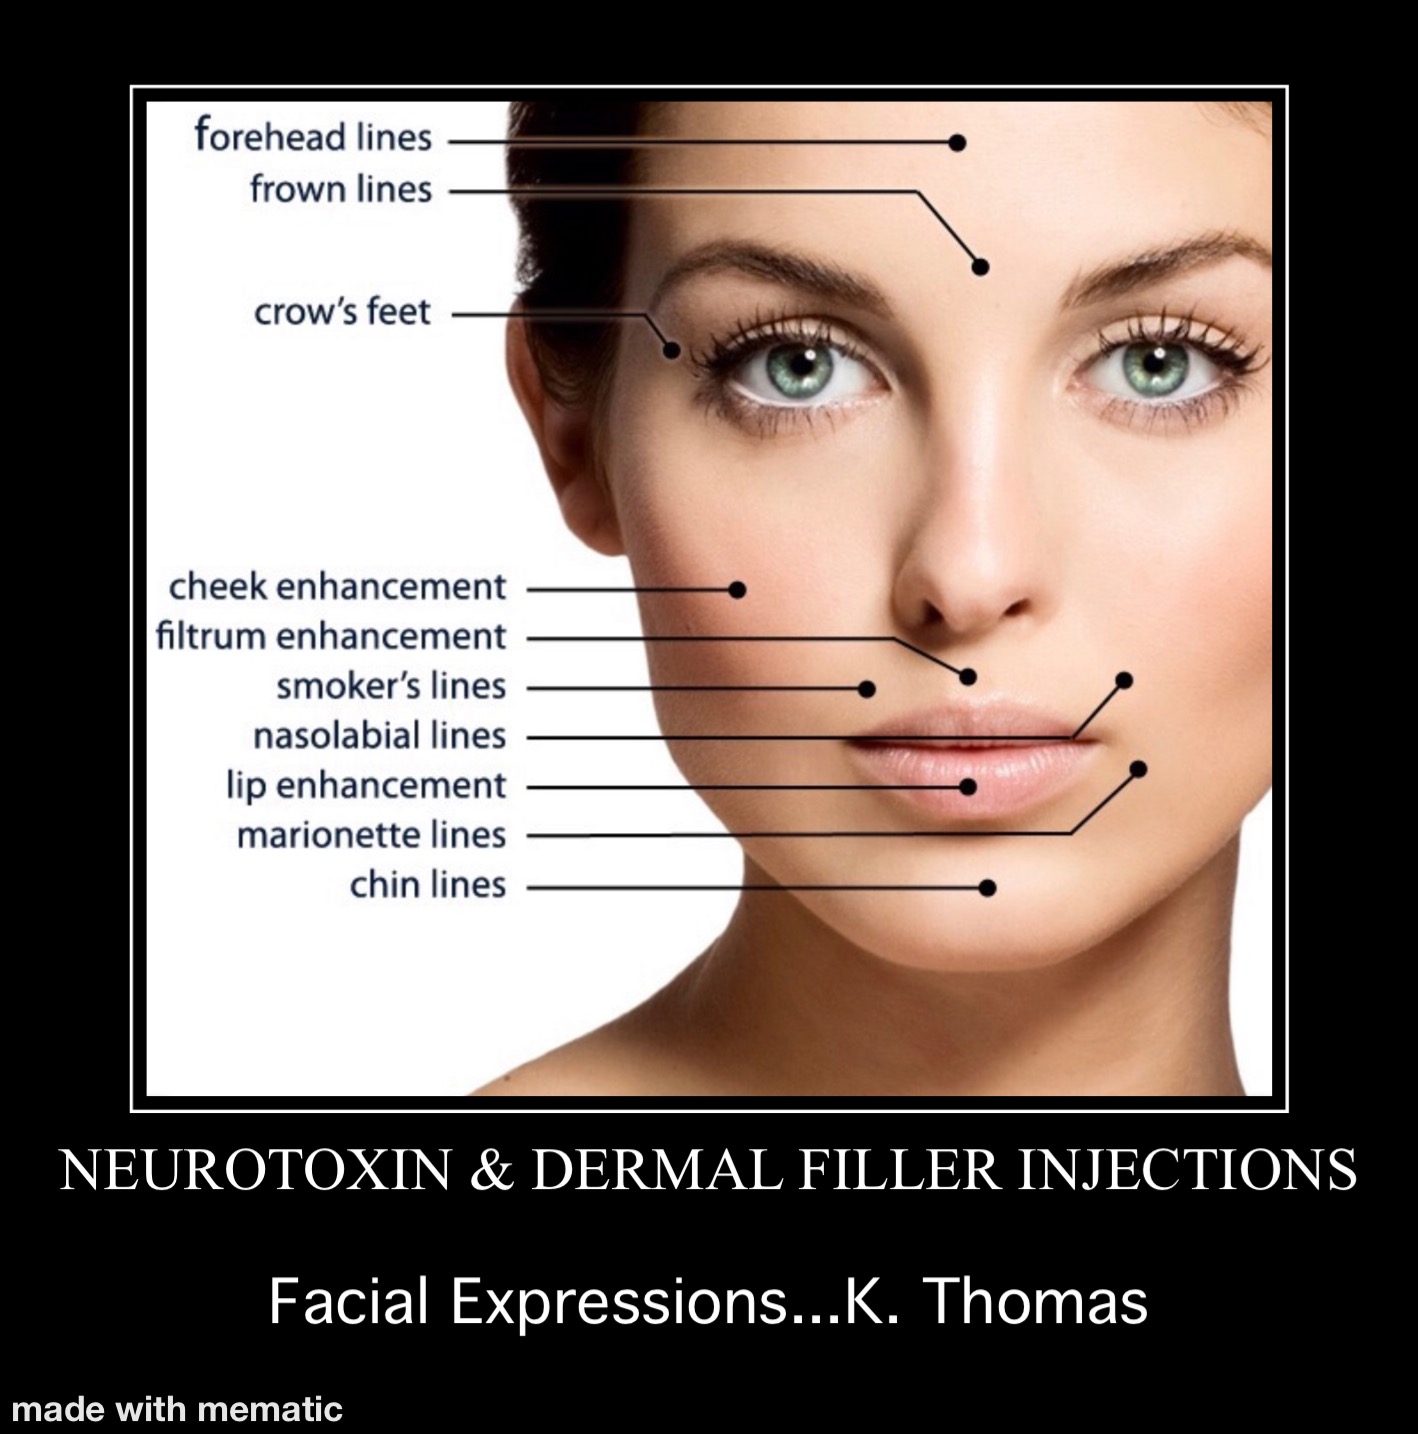 Facial Expressions MedSpa and Wellness Center